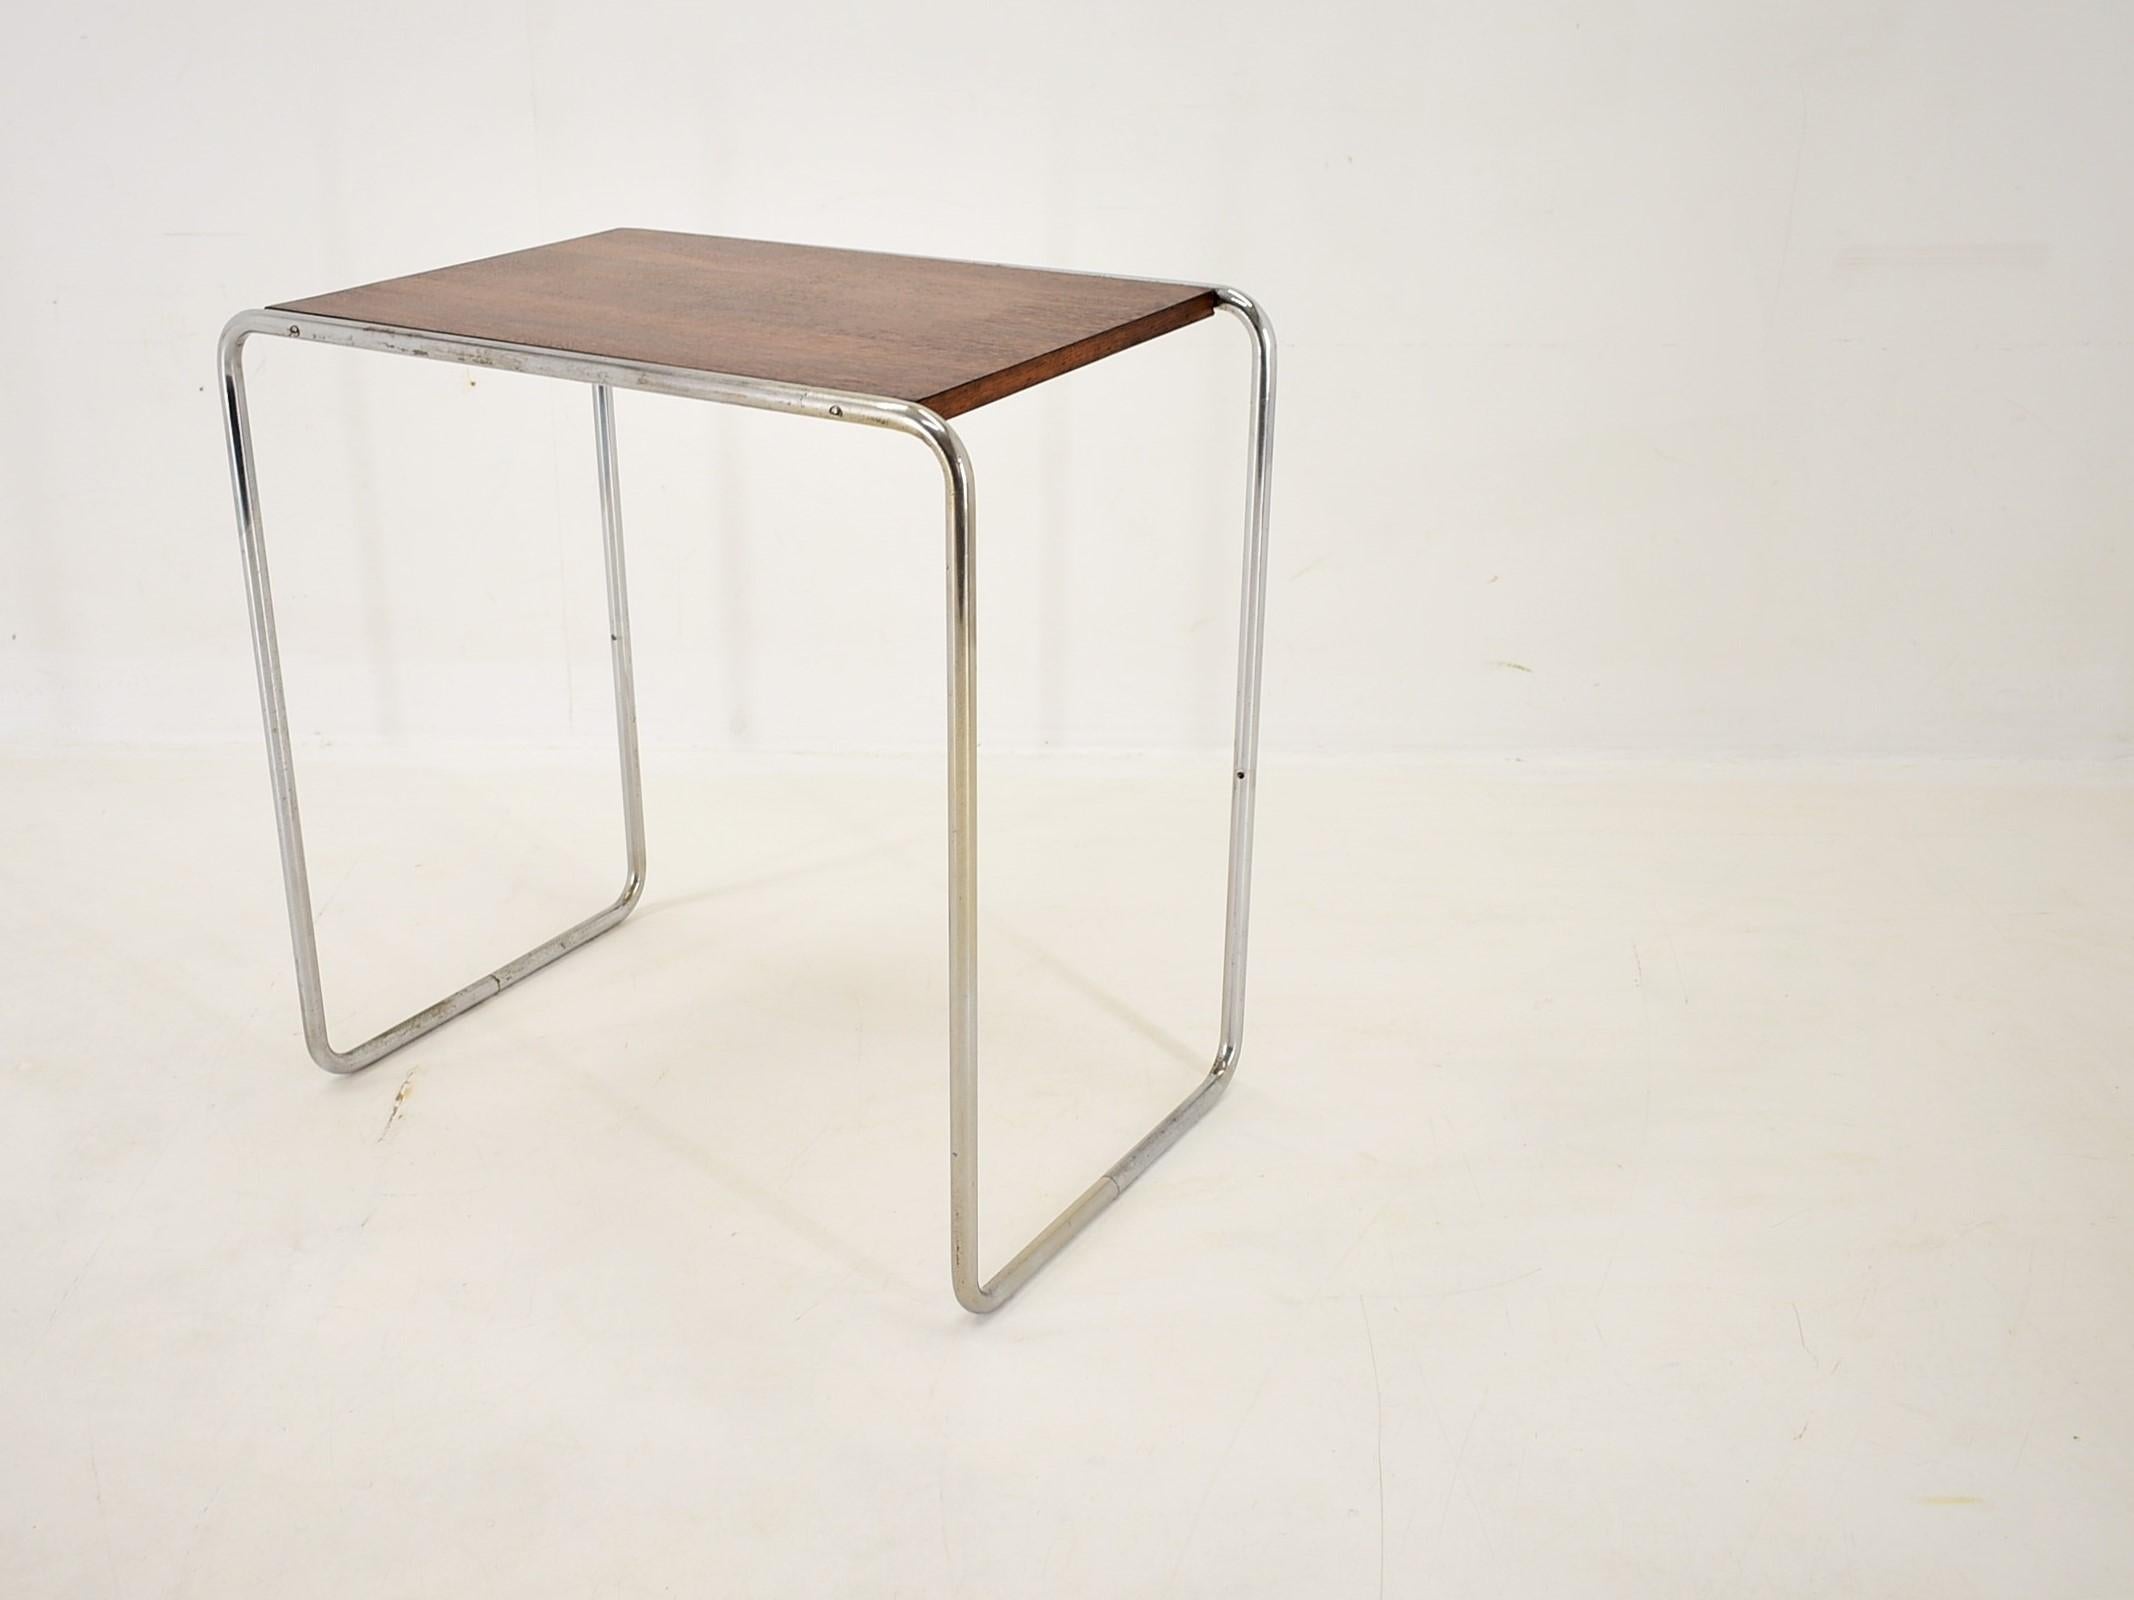 Bauhaus Chrome Table by Marcel Breuer for Mucke Melder, 1930s For Sale 2